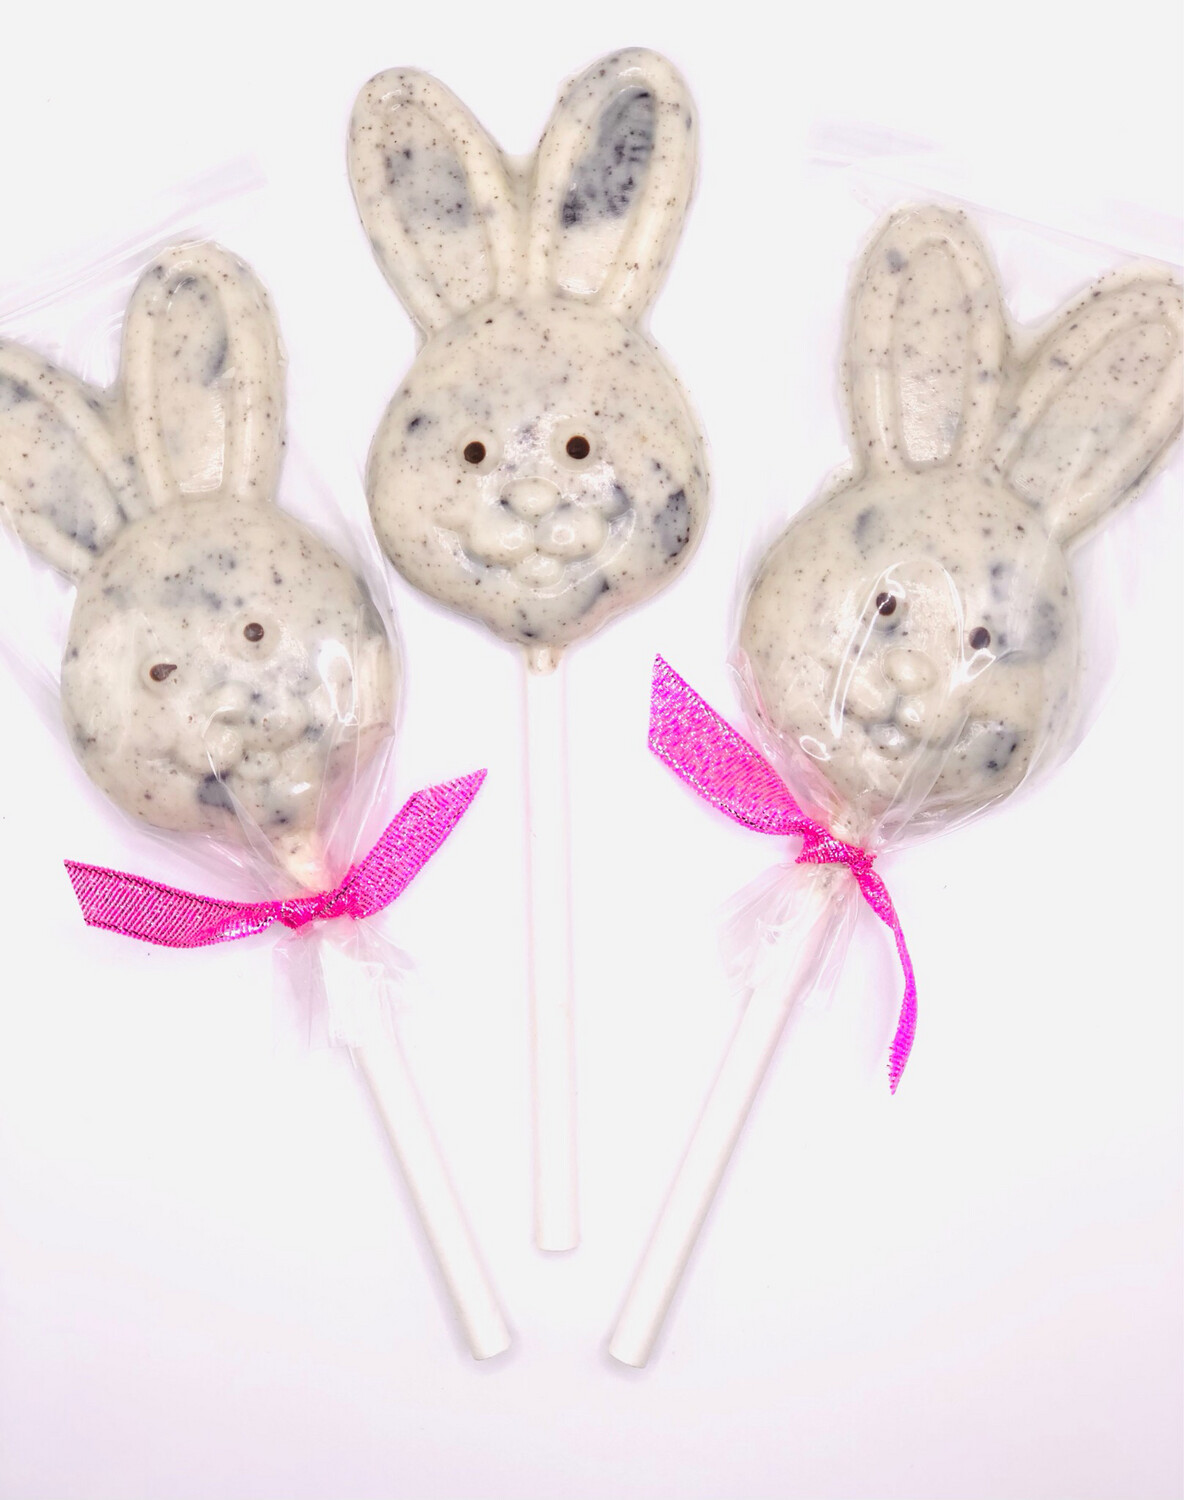 Peter Rabbit Cookies & Cream Bunny Pops (3)